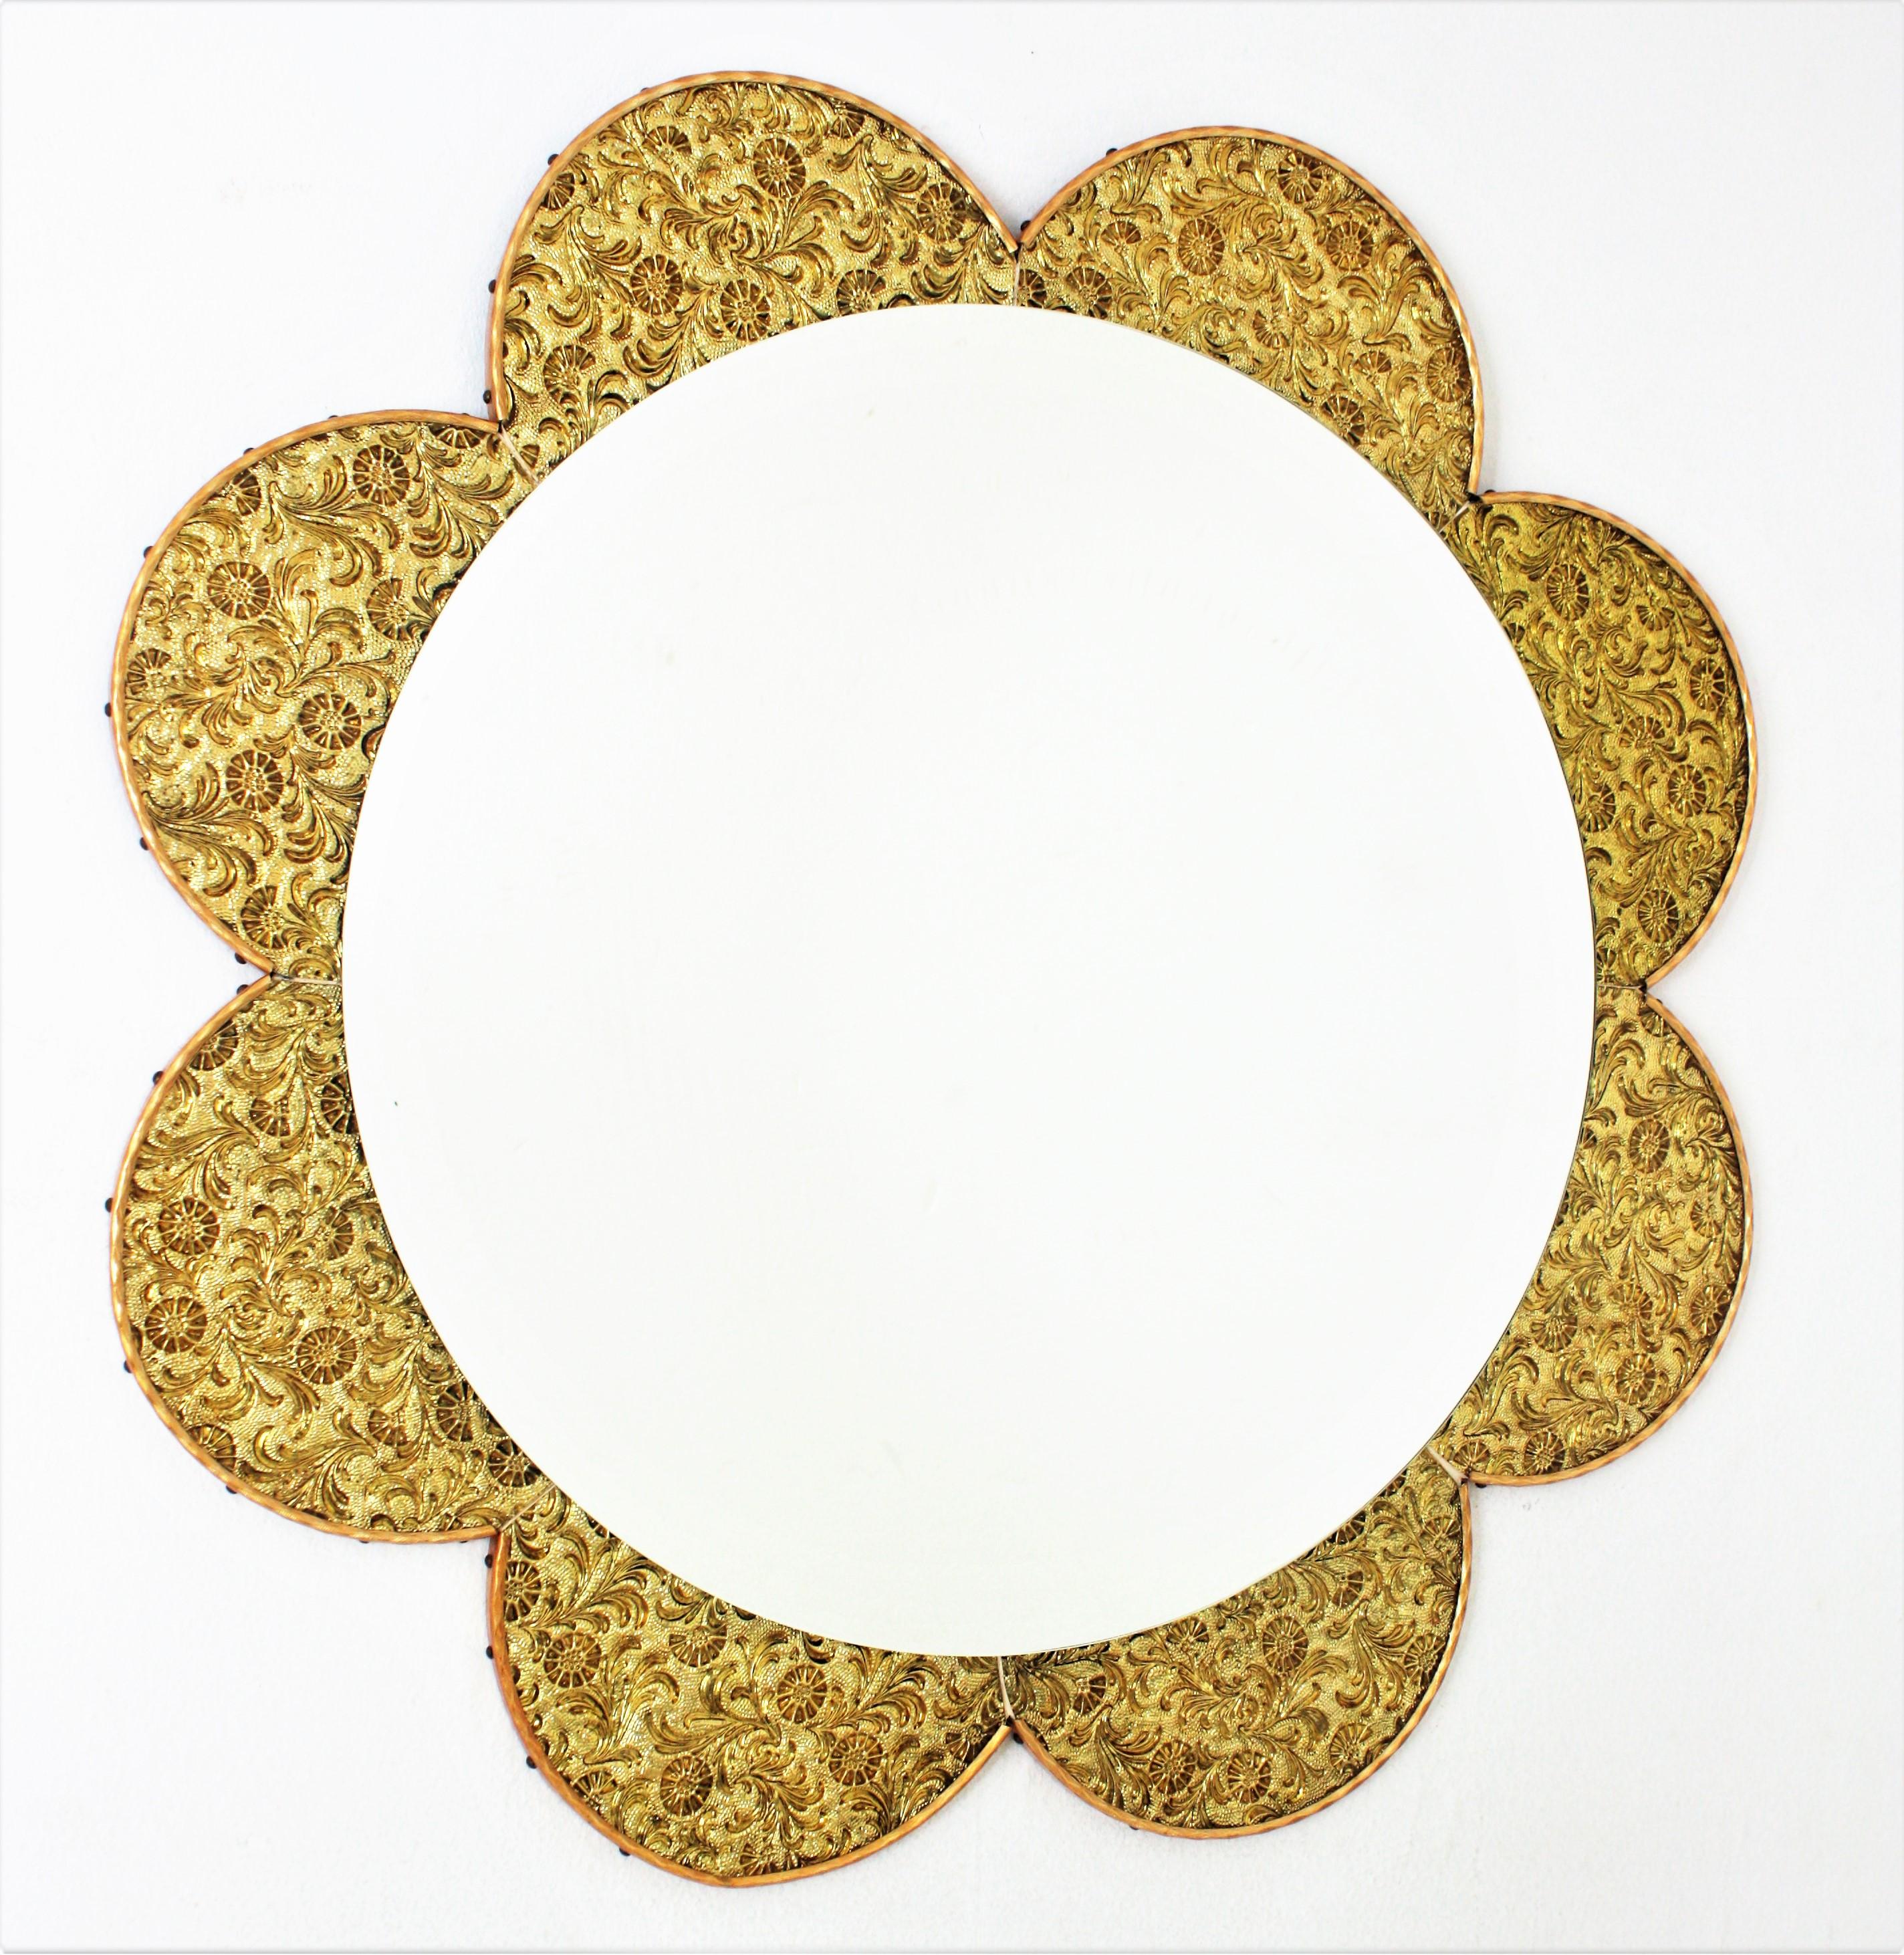 Miroir ensoleillé en forme de fleur de marguerite, cadre en verre doré, années 1960-1970.
Miroir à fleurs éclatées avec cadre à pétales composé de morceaux de verres dorés iridescents qui attirent le regard. Les pétales dorés et miroitants sont